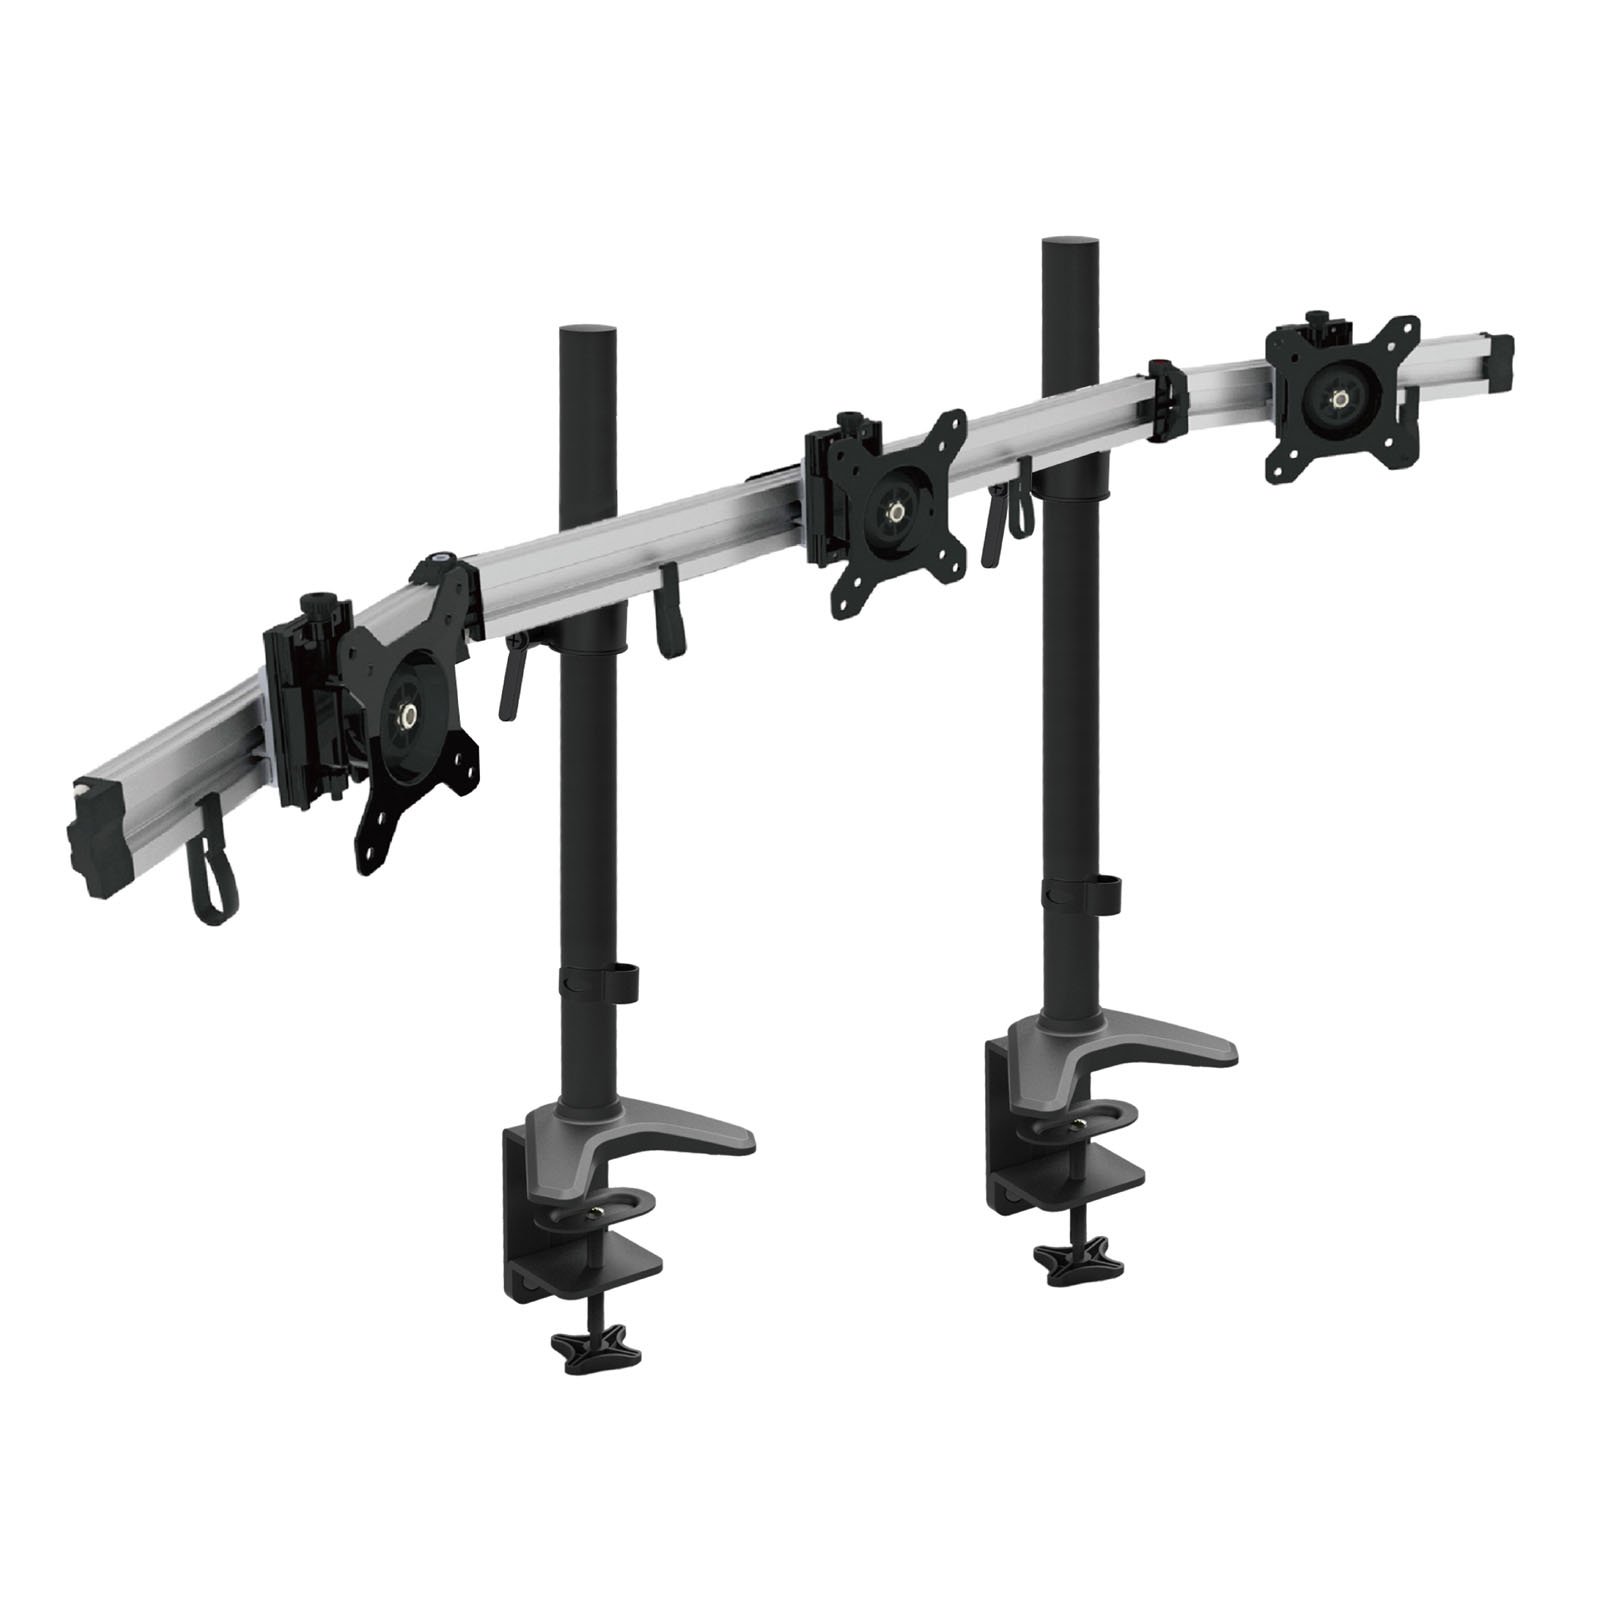 HFTEK 3-Fach-Monitorarm-Halterung Halter Tischhalterung für 3 Monitore von 15 – 34 Zoll mit Tisch-Klemmsystem - VESA-Lochmuster 75/100 (MP230C-XL)